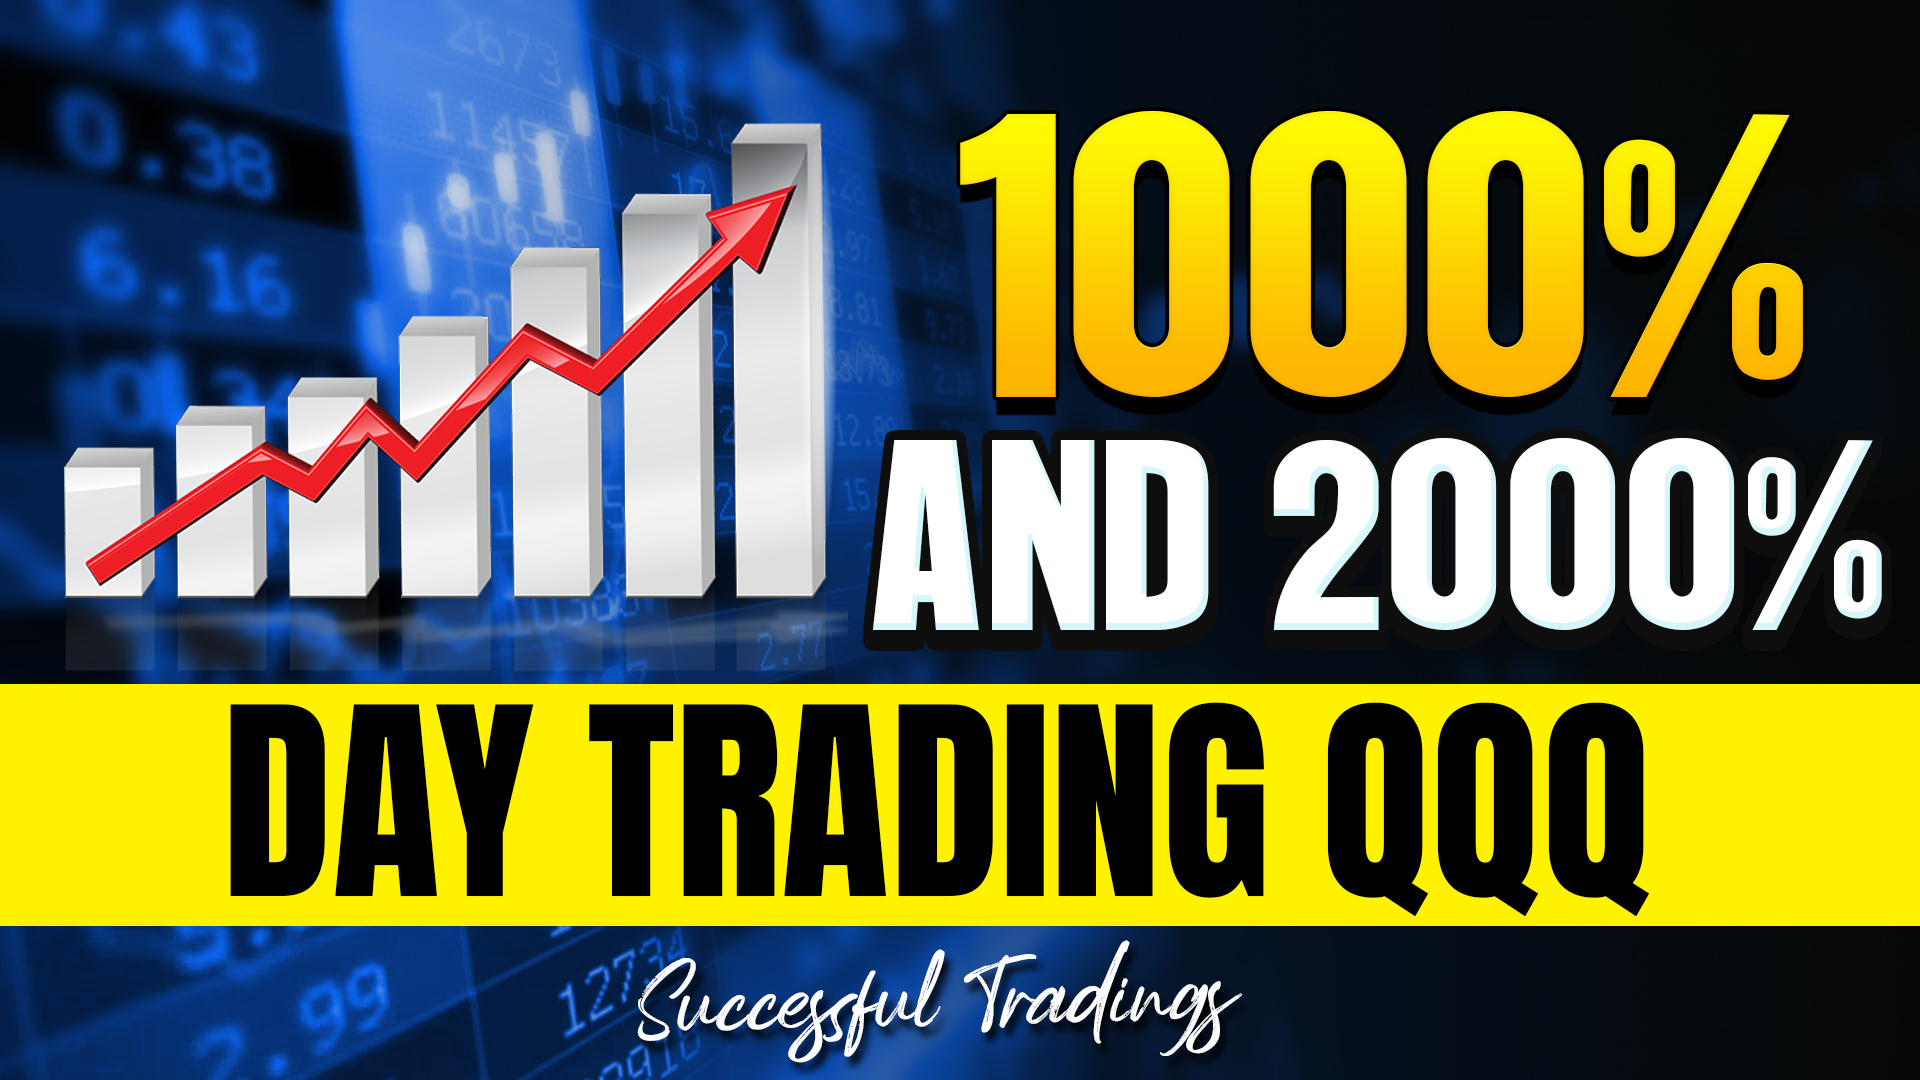 Day Trading QQQ Options For Big Profit